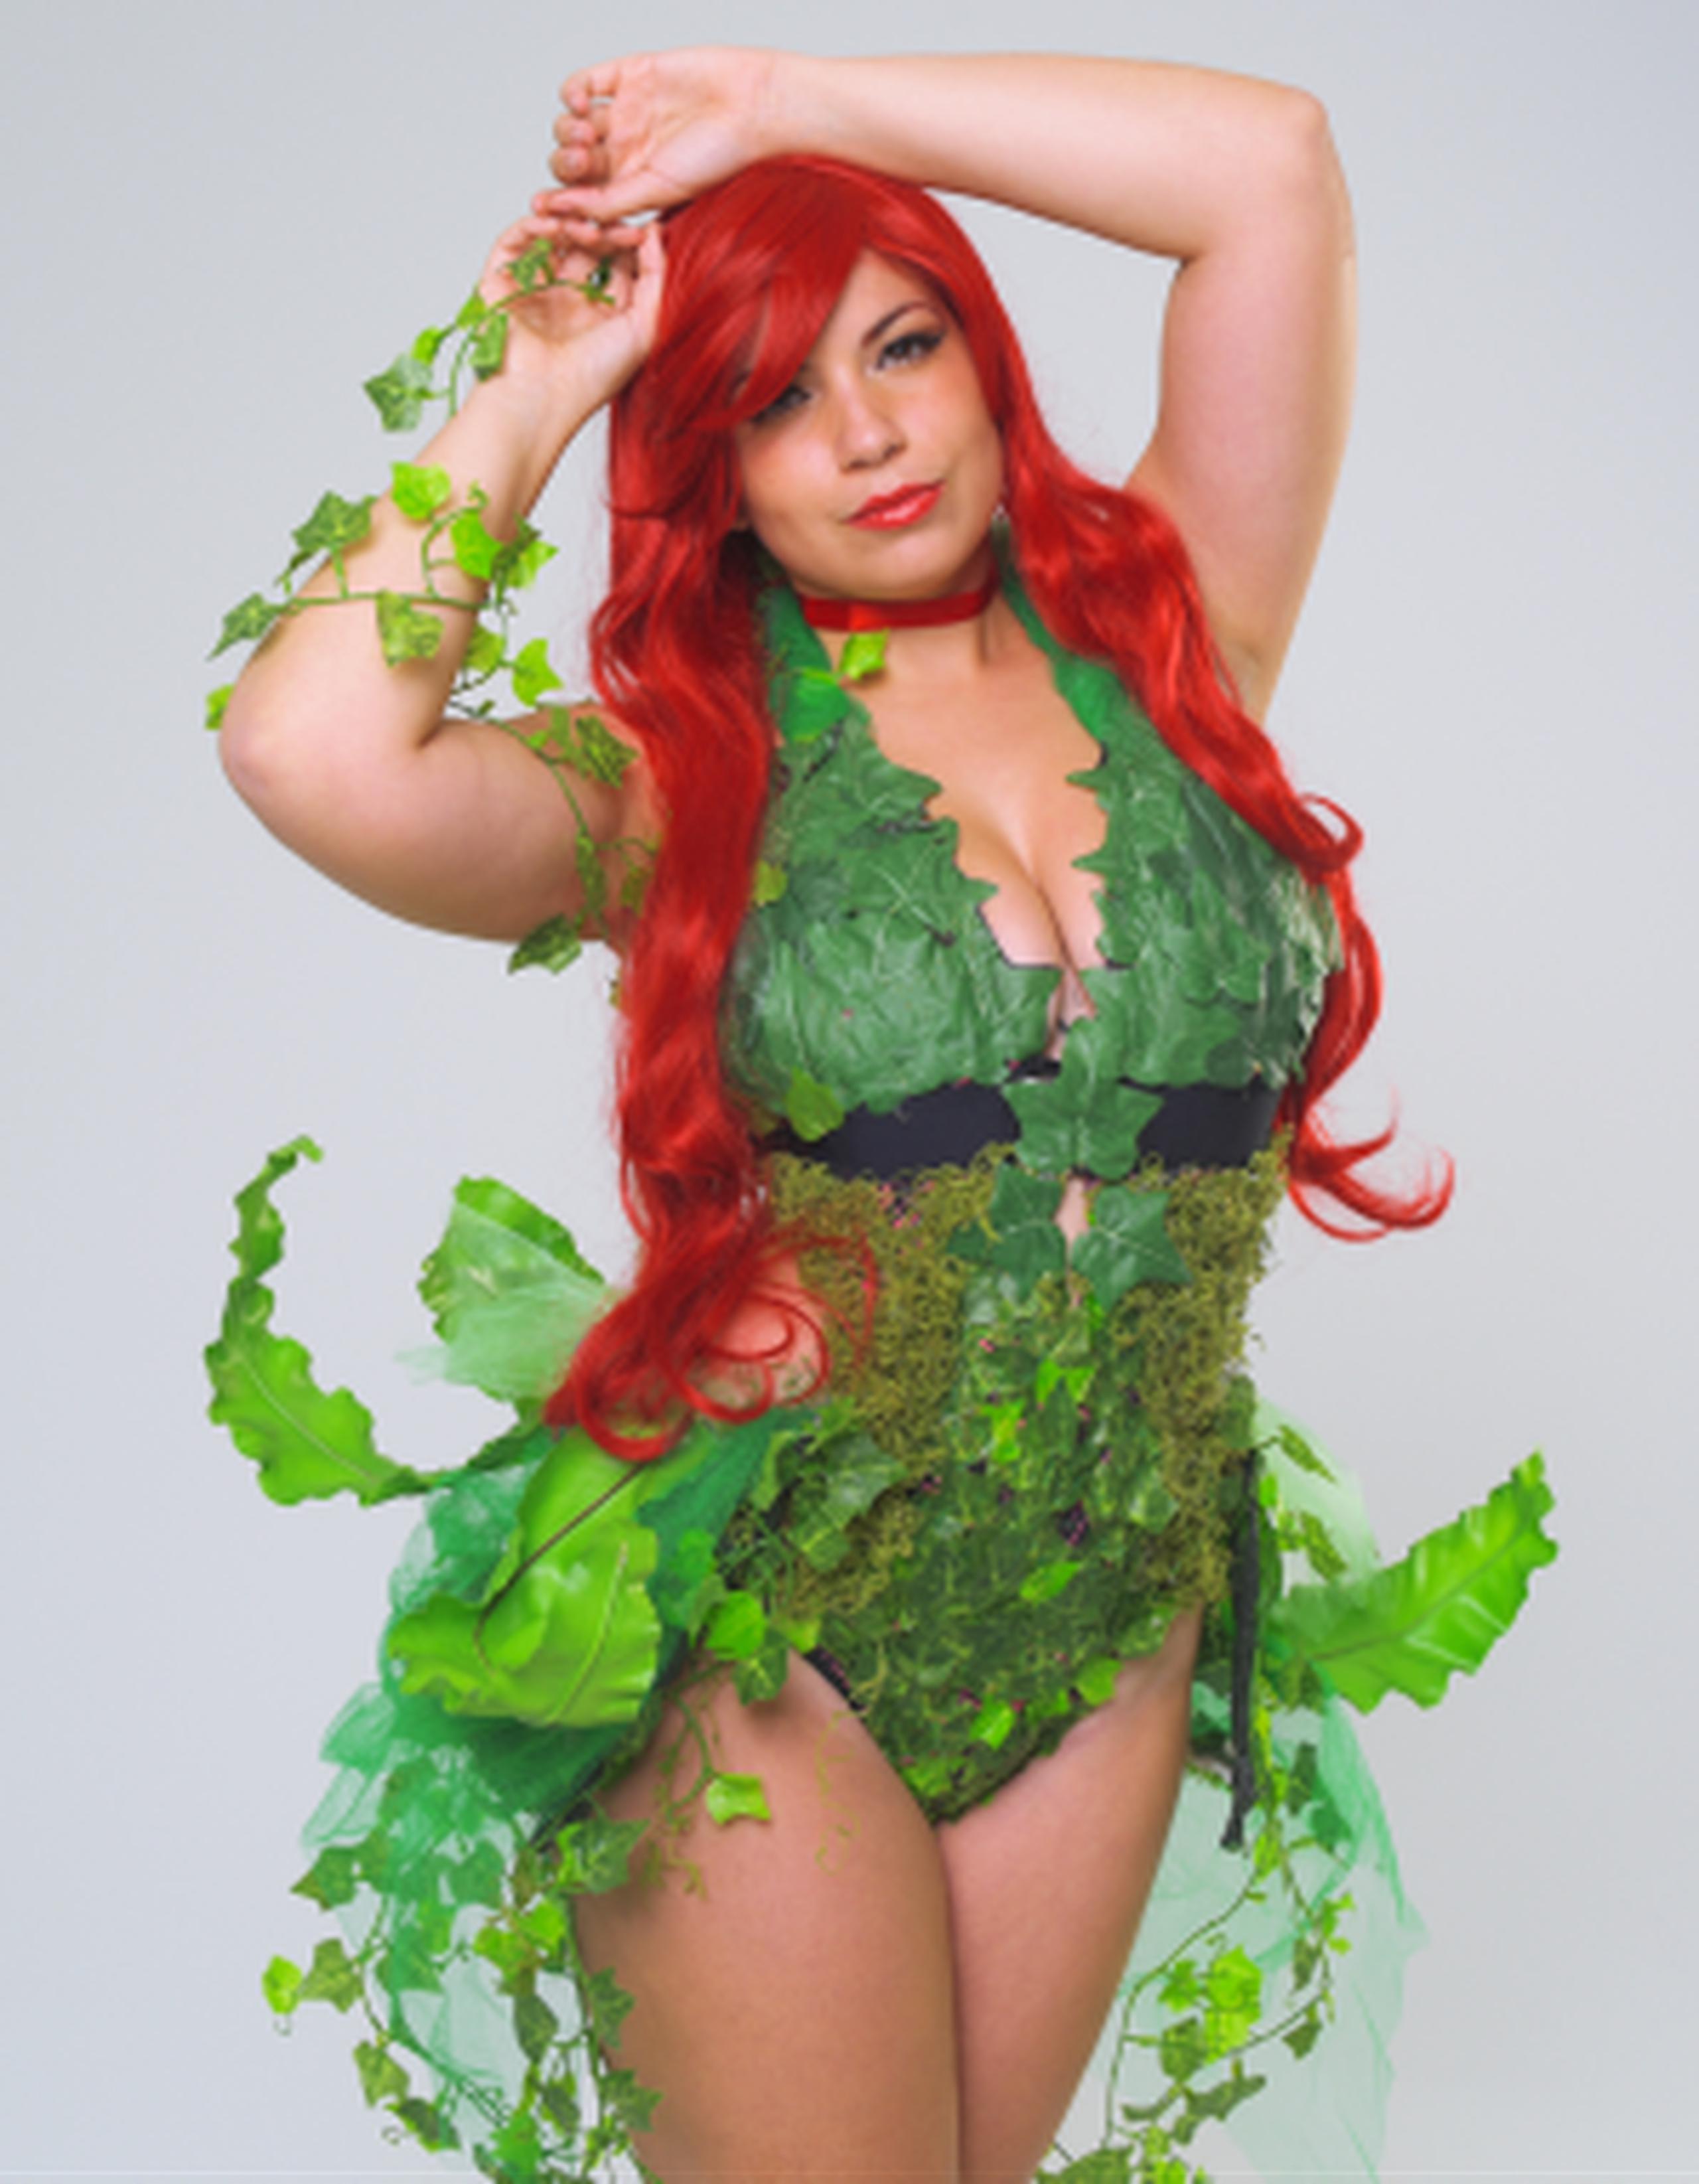 El disfraz del conocido personaje de los cómics de Batman “Poison Ivy” es uno de los más que se pone la cosplayer boricua Ysa Marie Colón en los Comic Con. (neidy.rosado@gfrmedia.com)